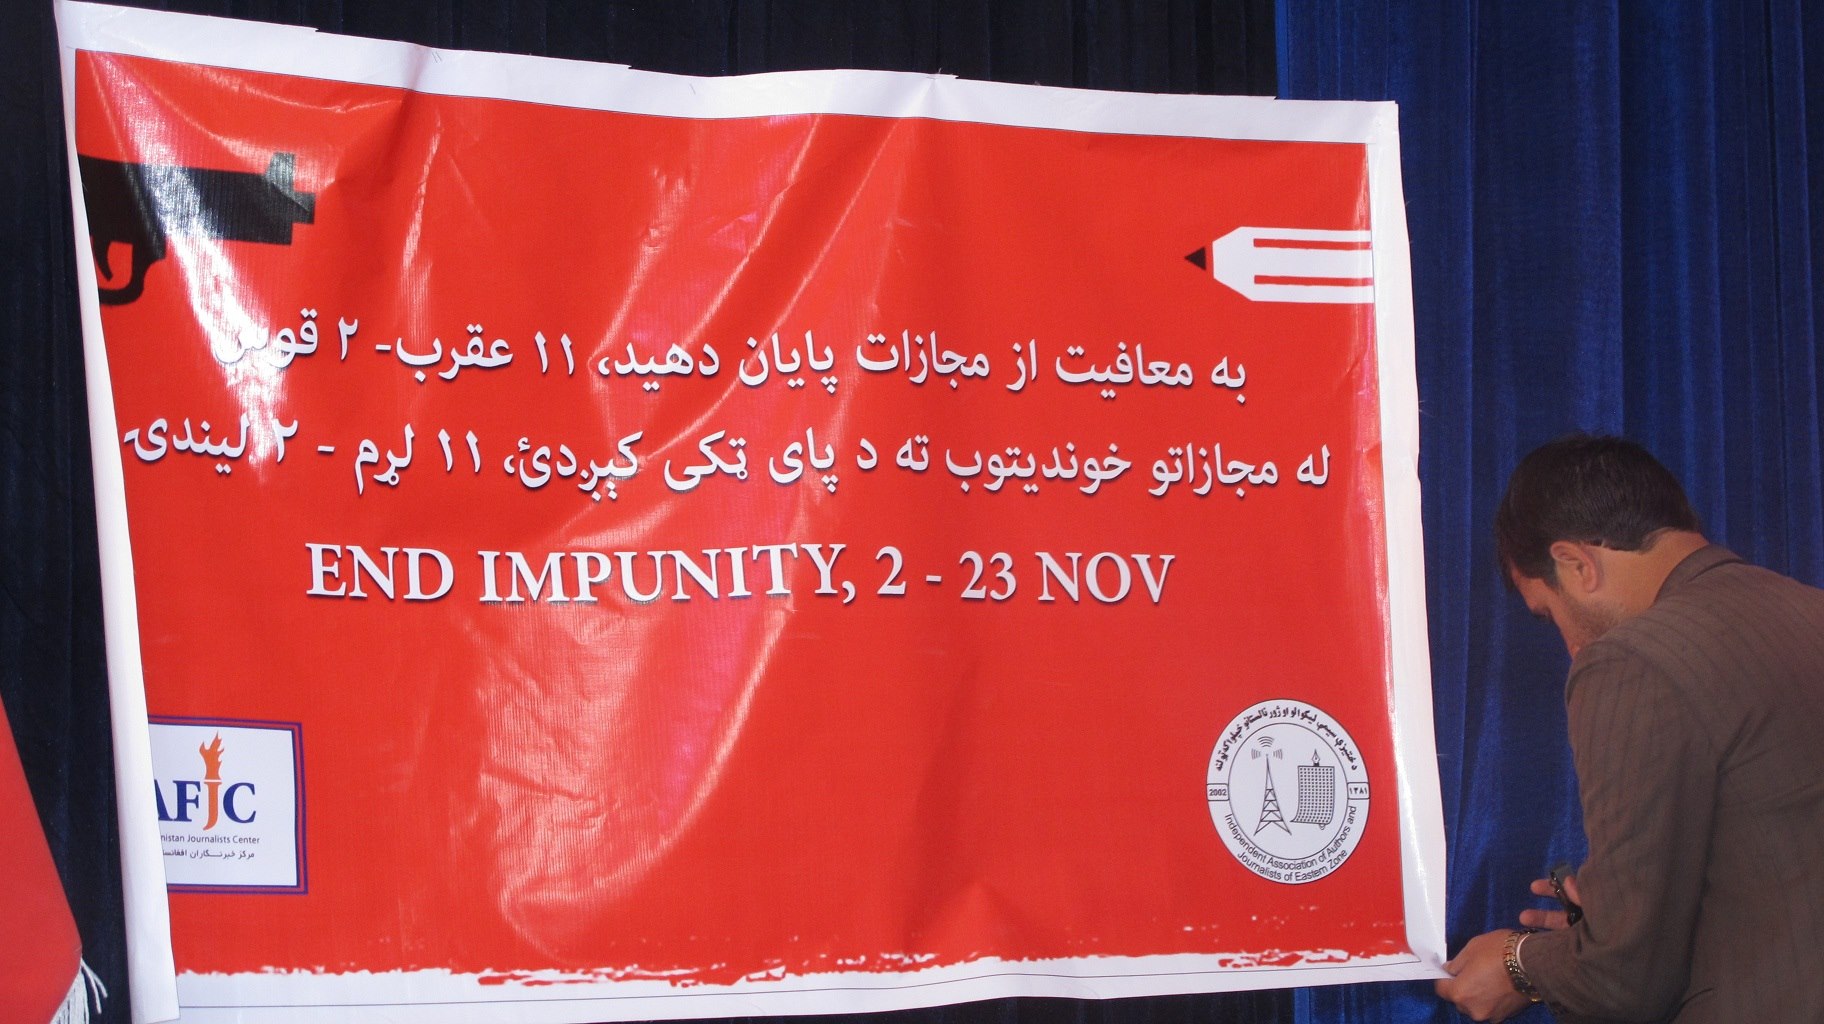 Campagne de l'AFJC contre l'impunité, 2-23 novembre 2014